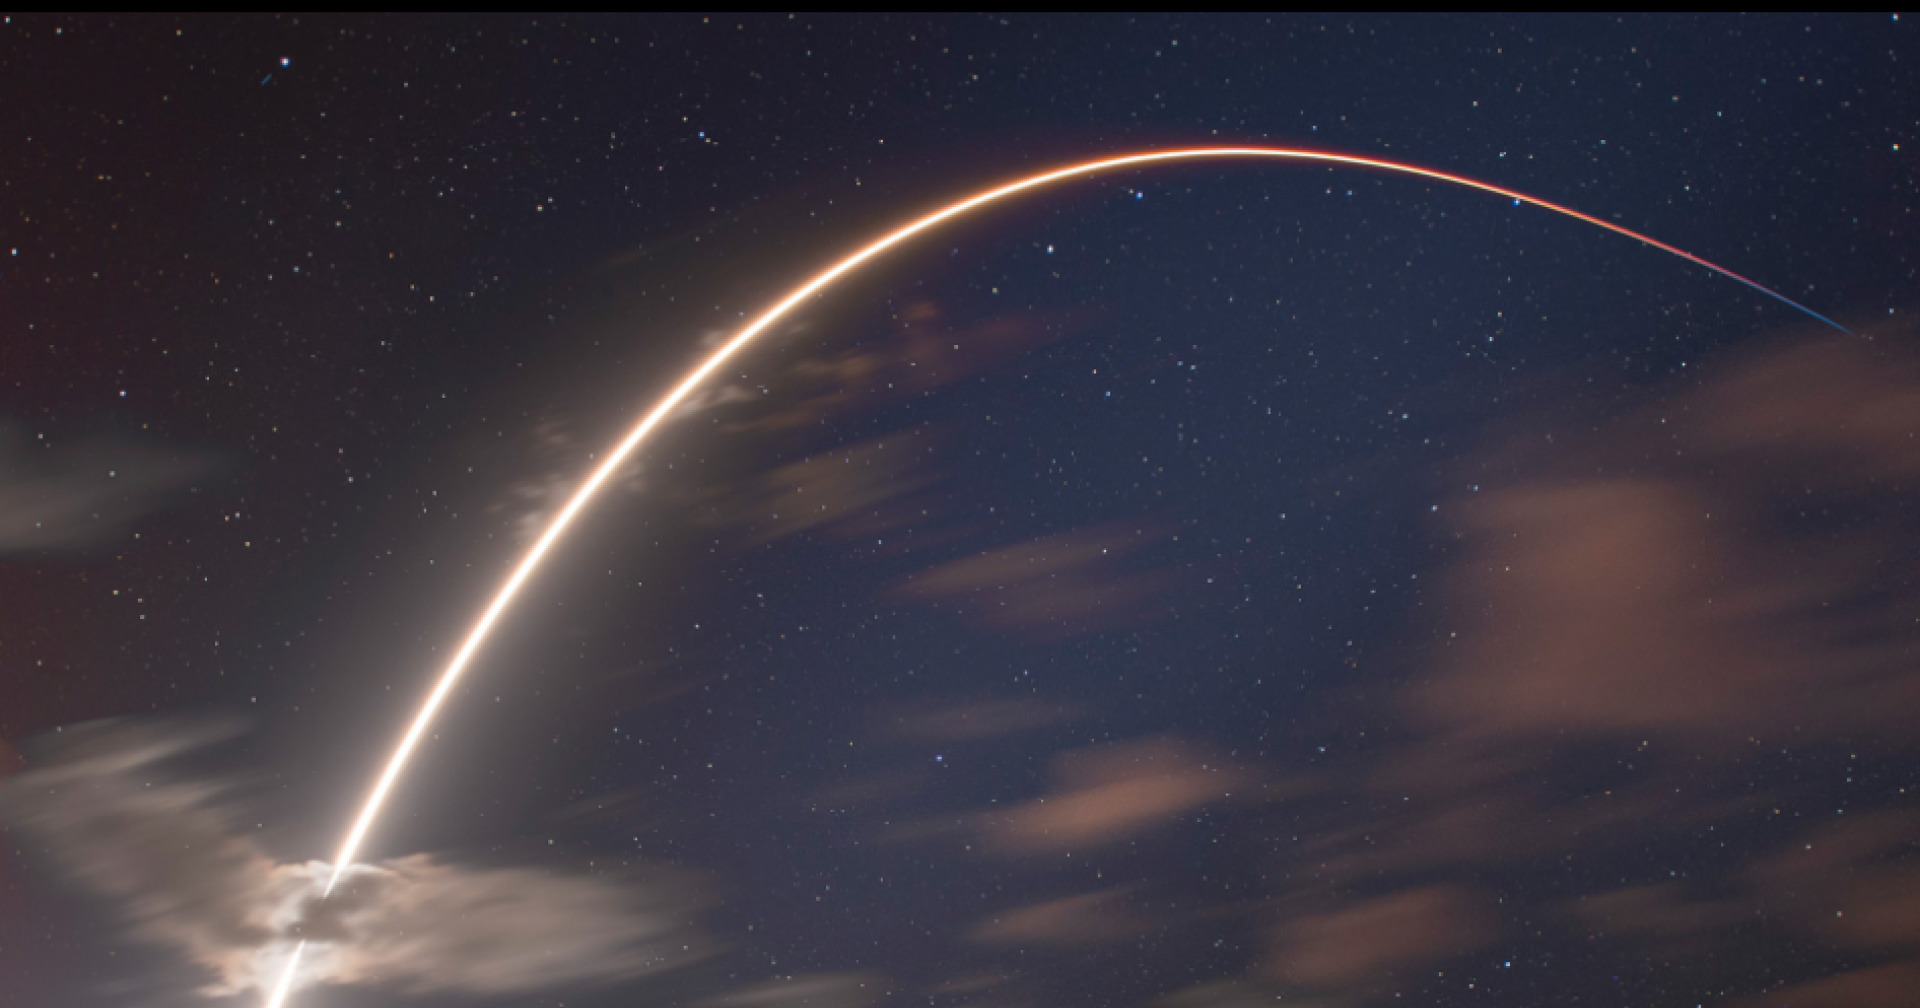 มองโกเลียอยู่ระหว่างหารือ SpaceX เพื่อปล่อยดาวเทียมแห่งชาติดวงแรกของประเทศ